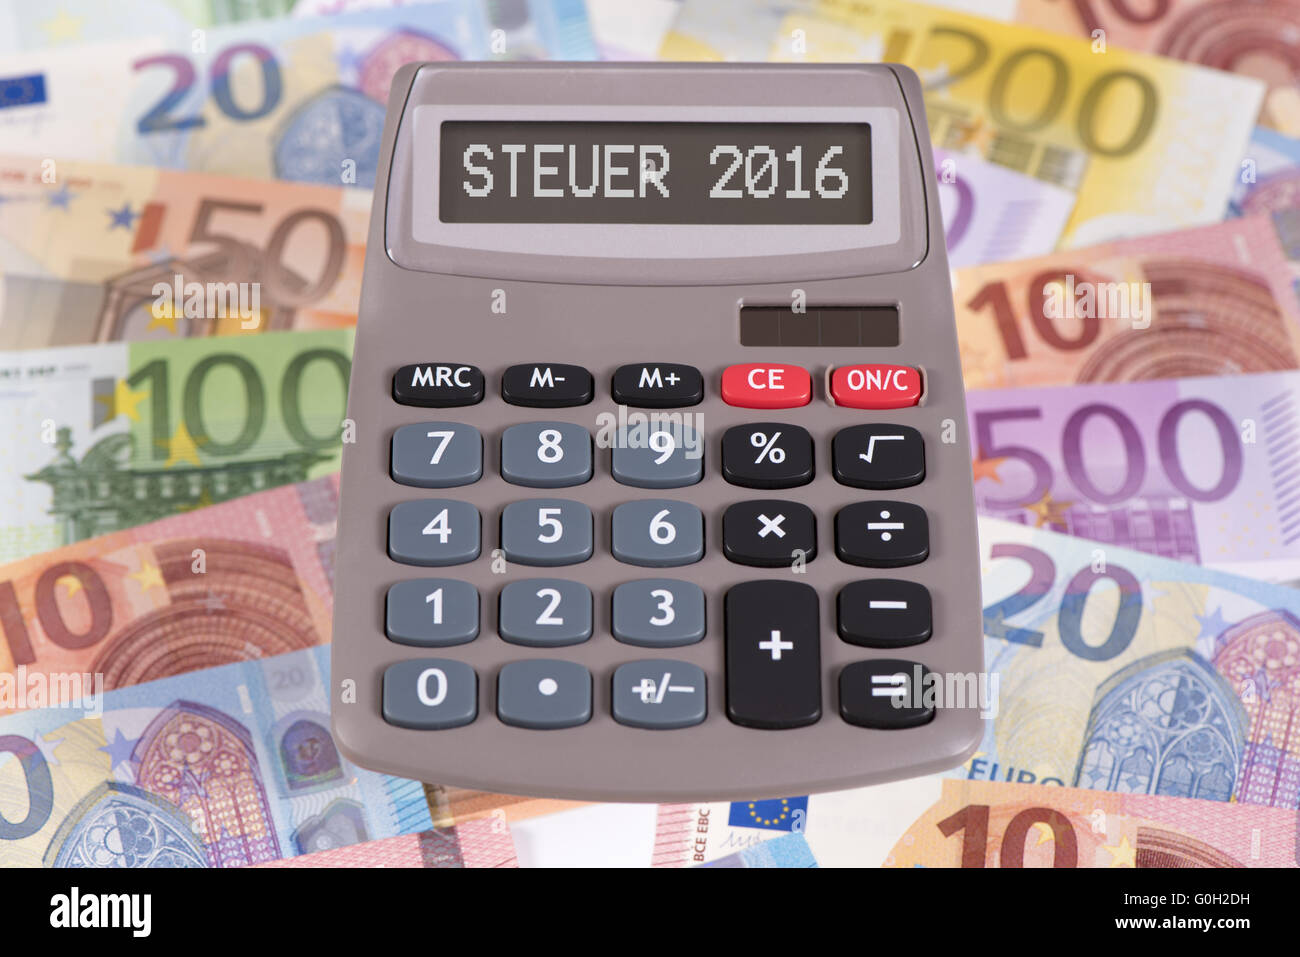 Calculatrice financière avec l'affichage sur les billets en euros 2016 Banque D'Images